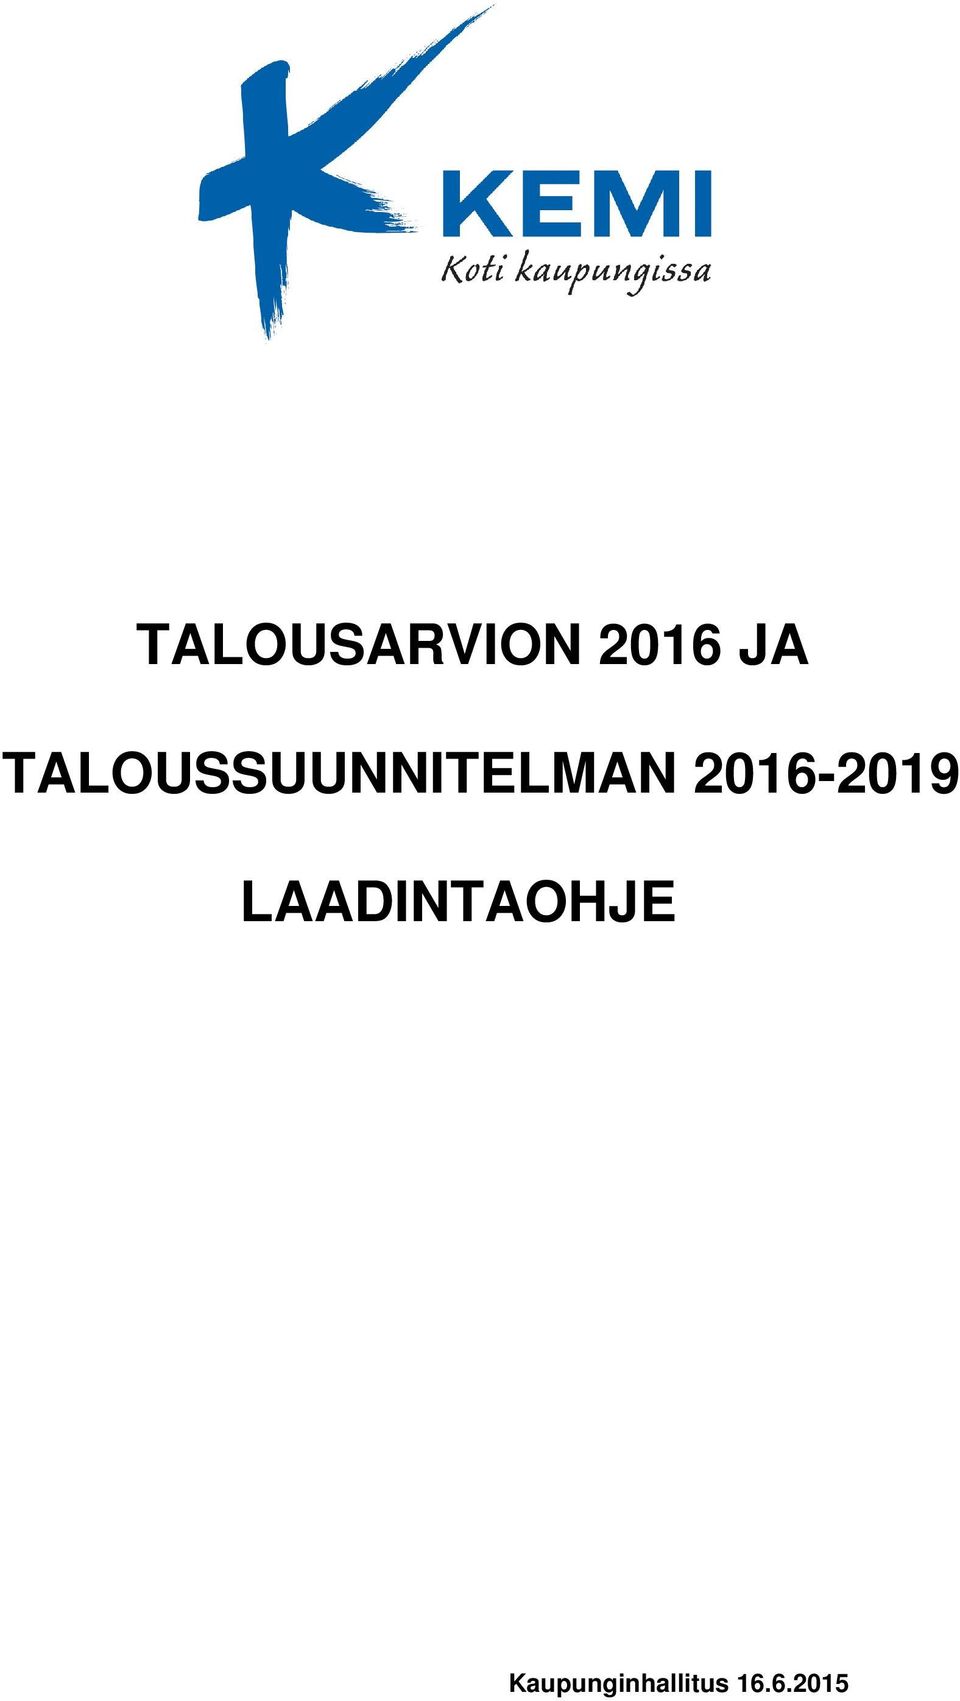 2016-2019 LAADINTAOHJE